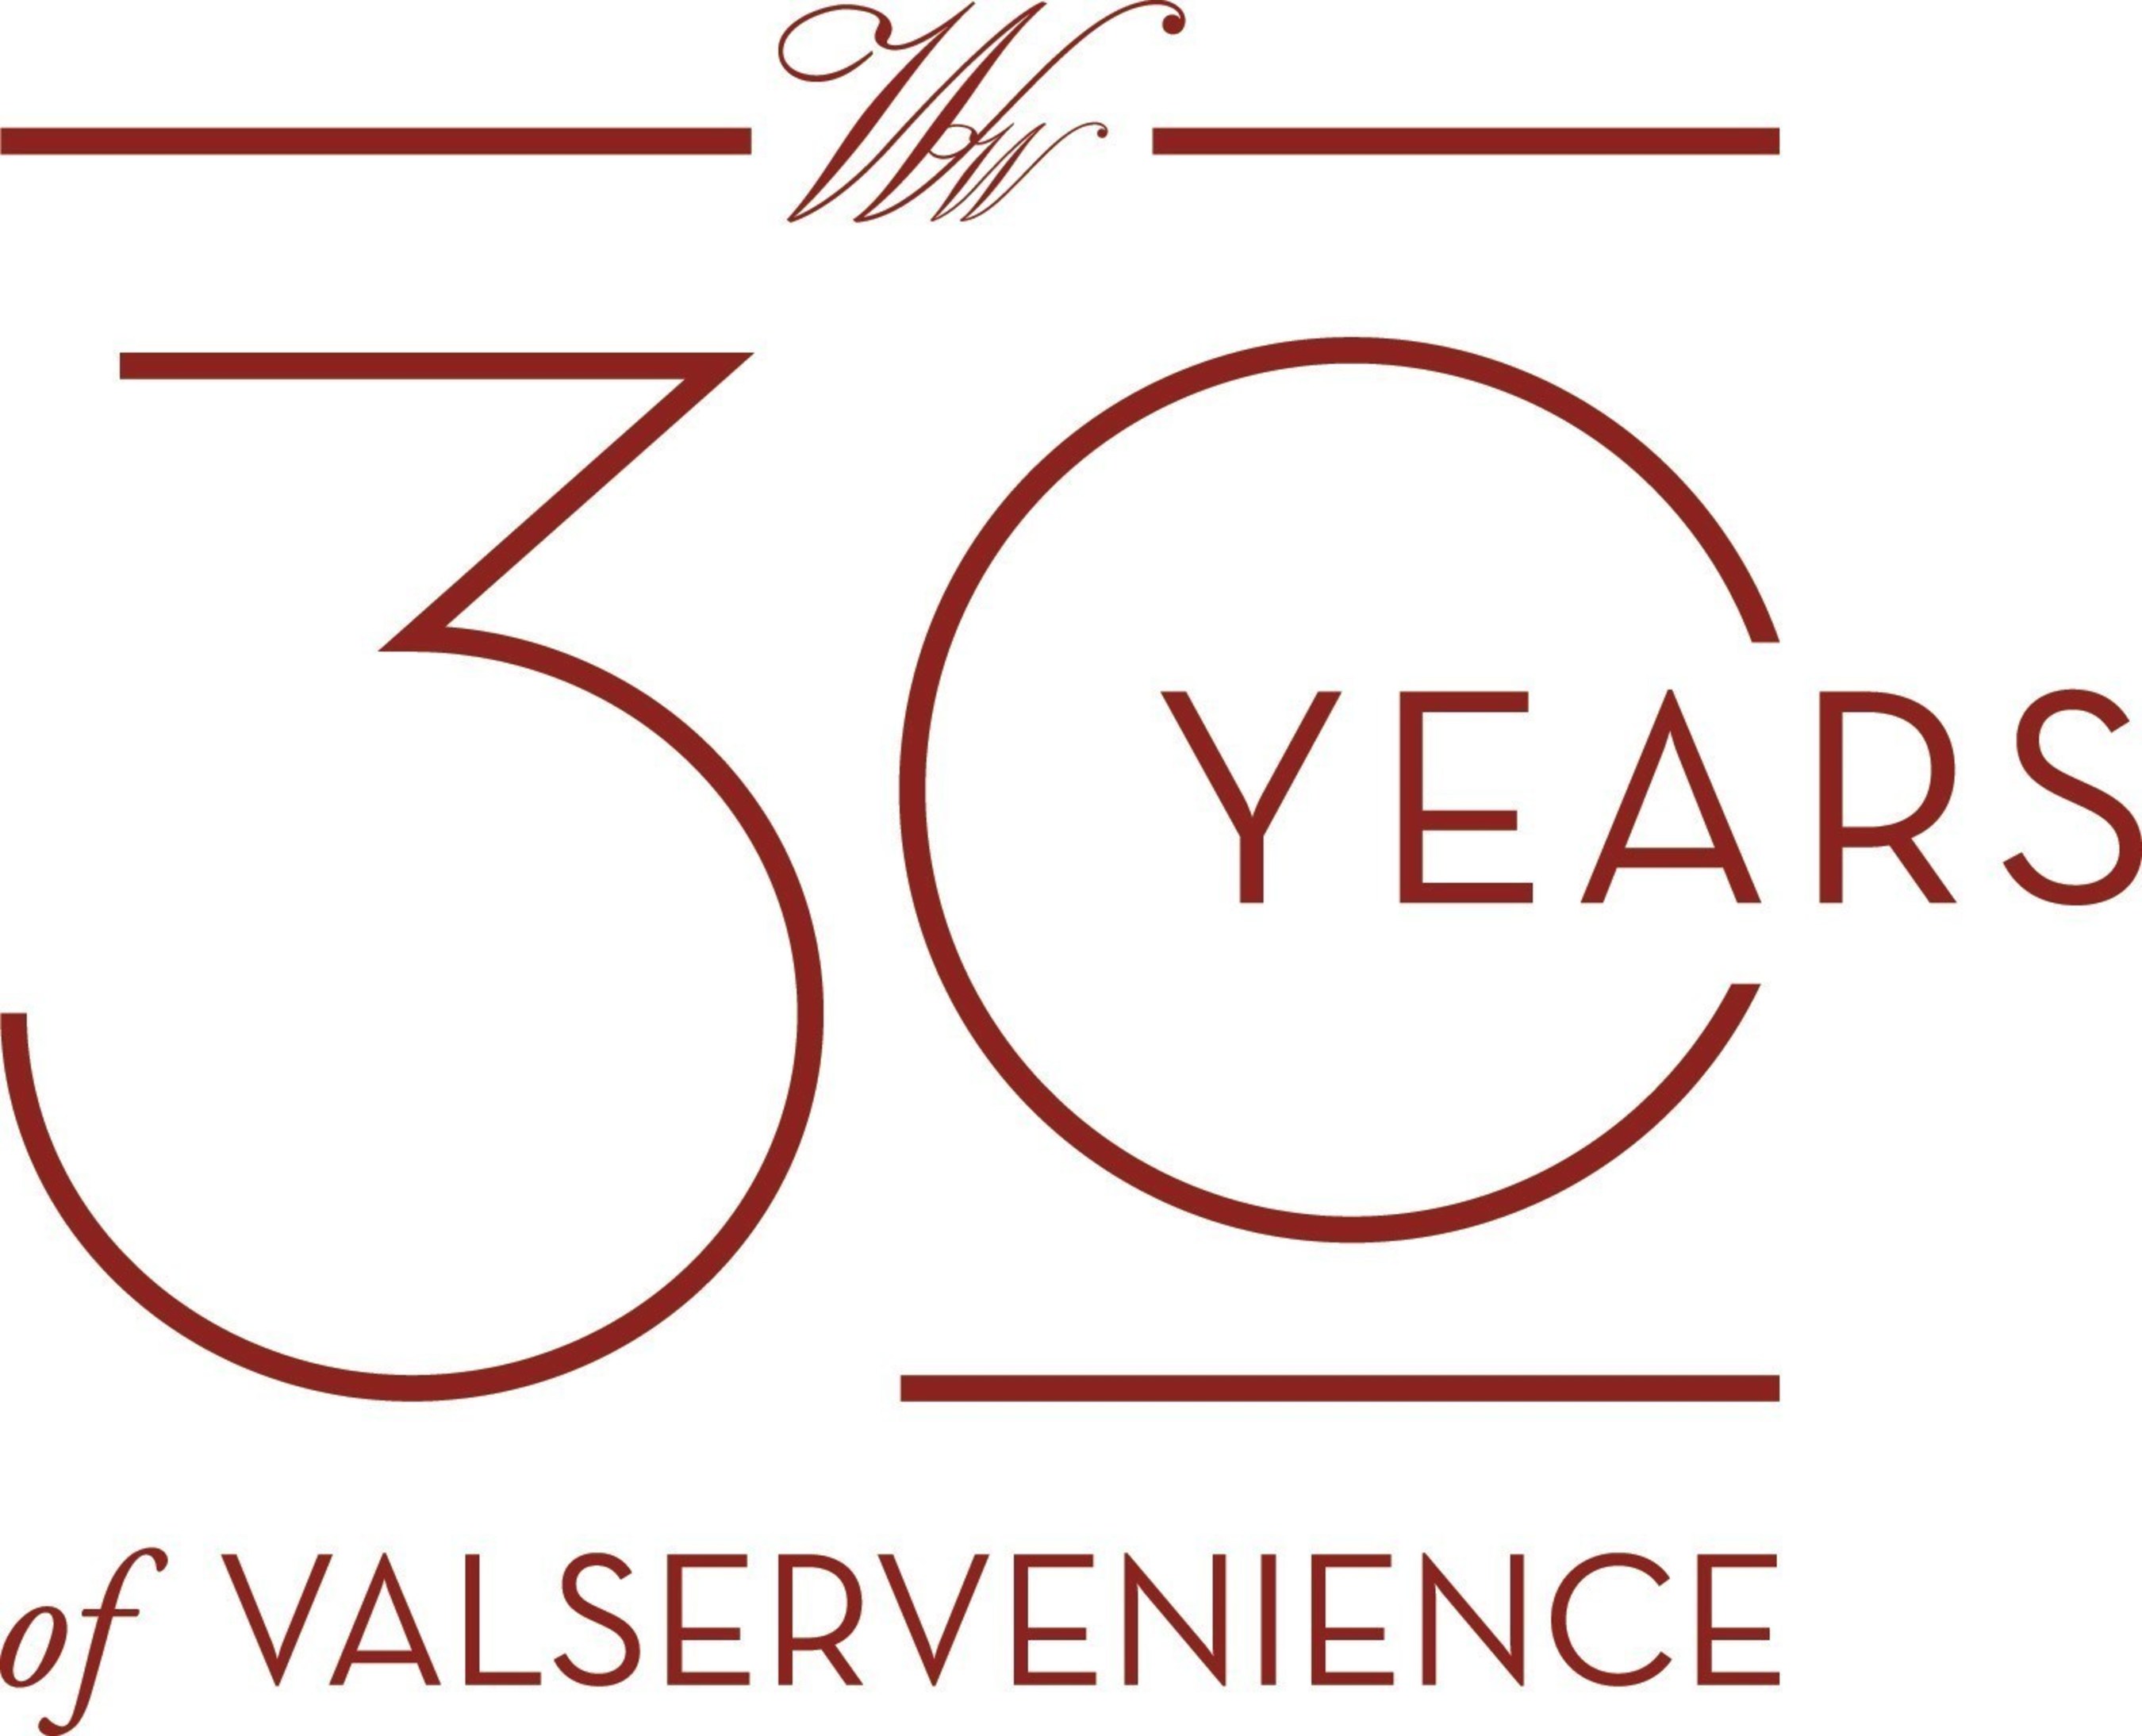 Valservenience is a trademark of Wedgewood Wedding & Banquet Centers (PRNewsFoto/Wedgewood Wedding & Banquet...)